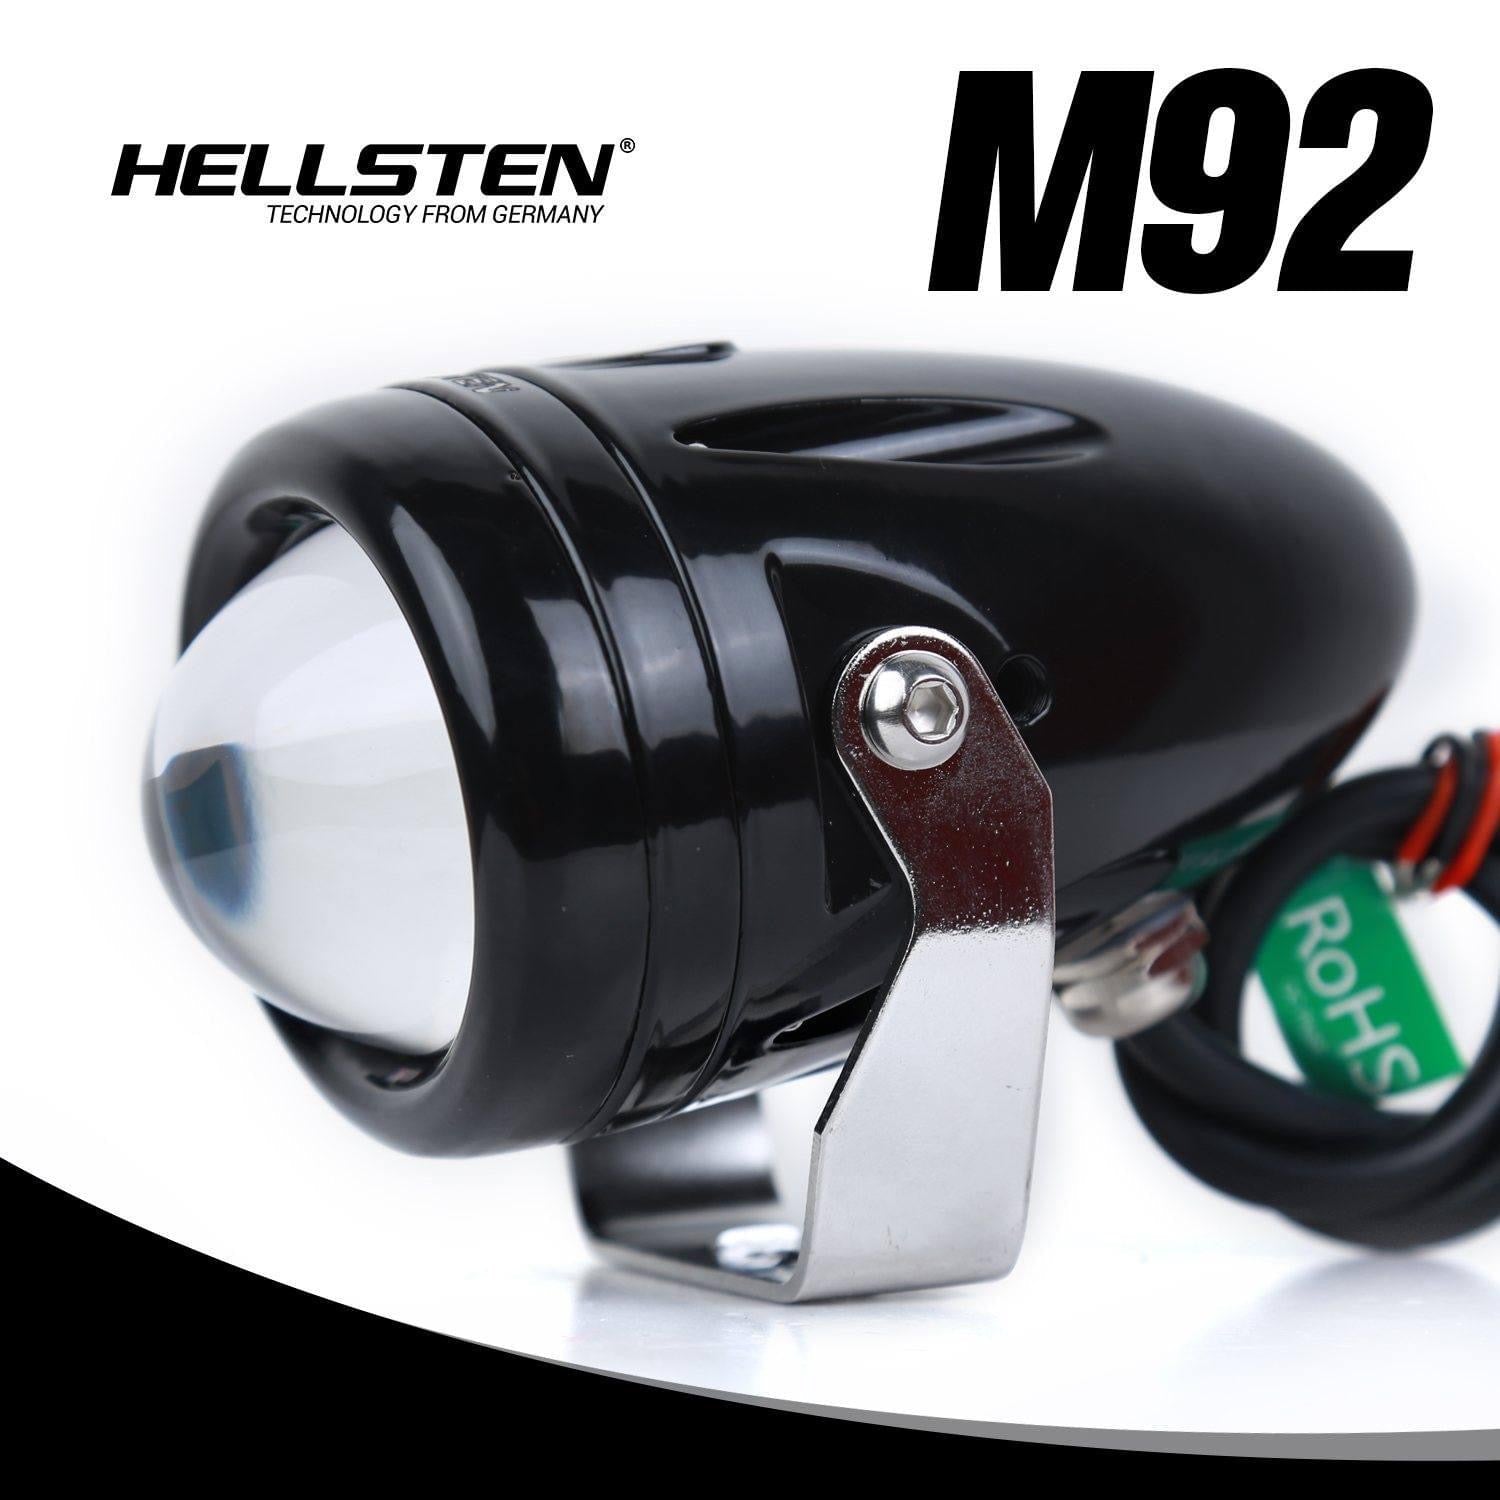 Hellsten M92 - Hellsten LED Philippines